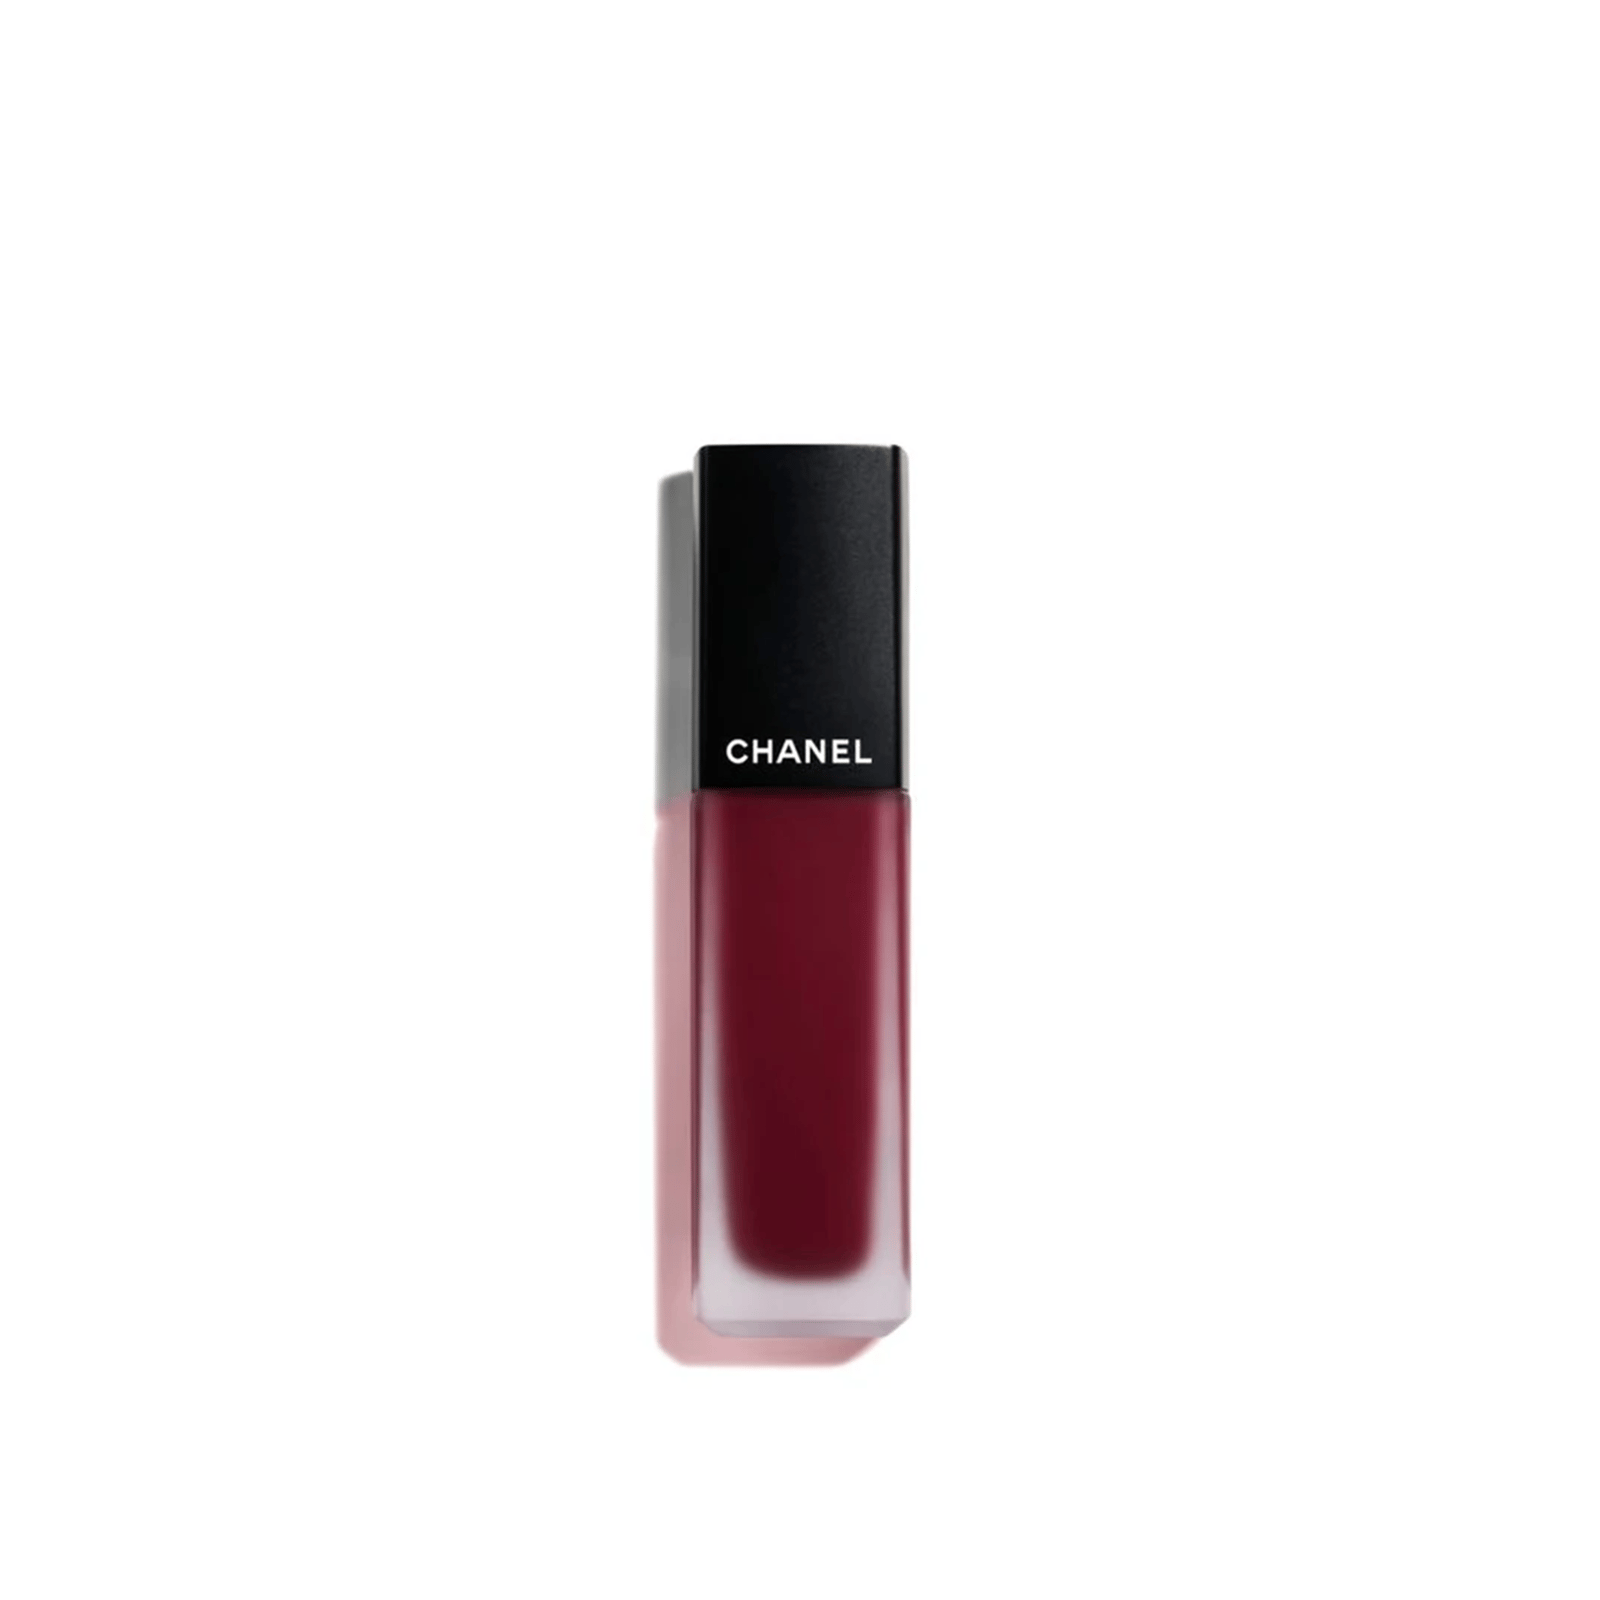 CHANEL Rouge Allure Ink Fusion Intense Matte Liquid Lip Colour 826 Pourpre 6ml (0.20 fl oz)